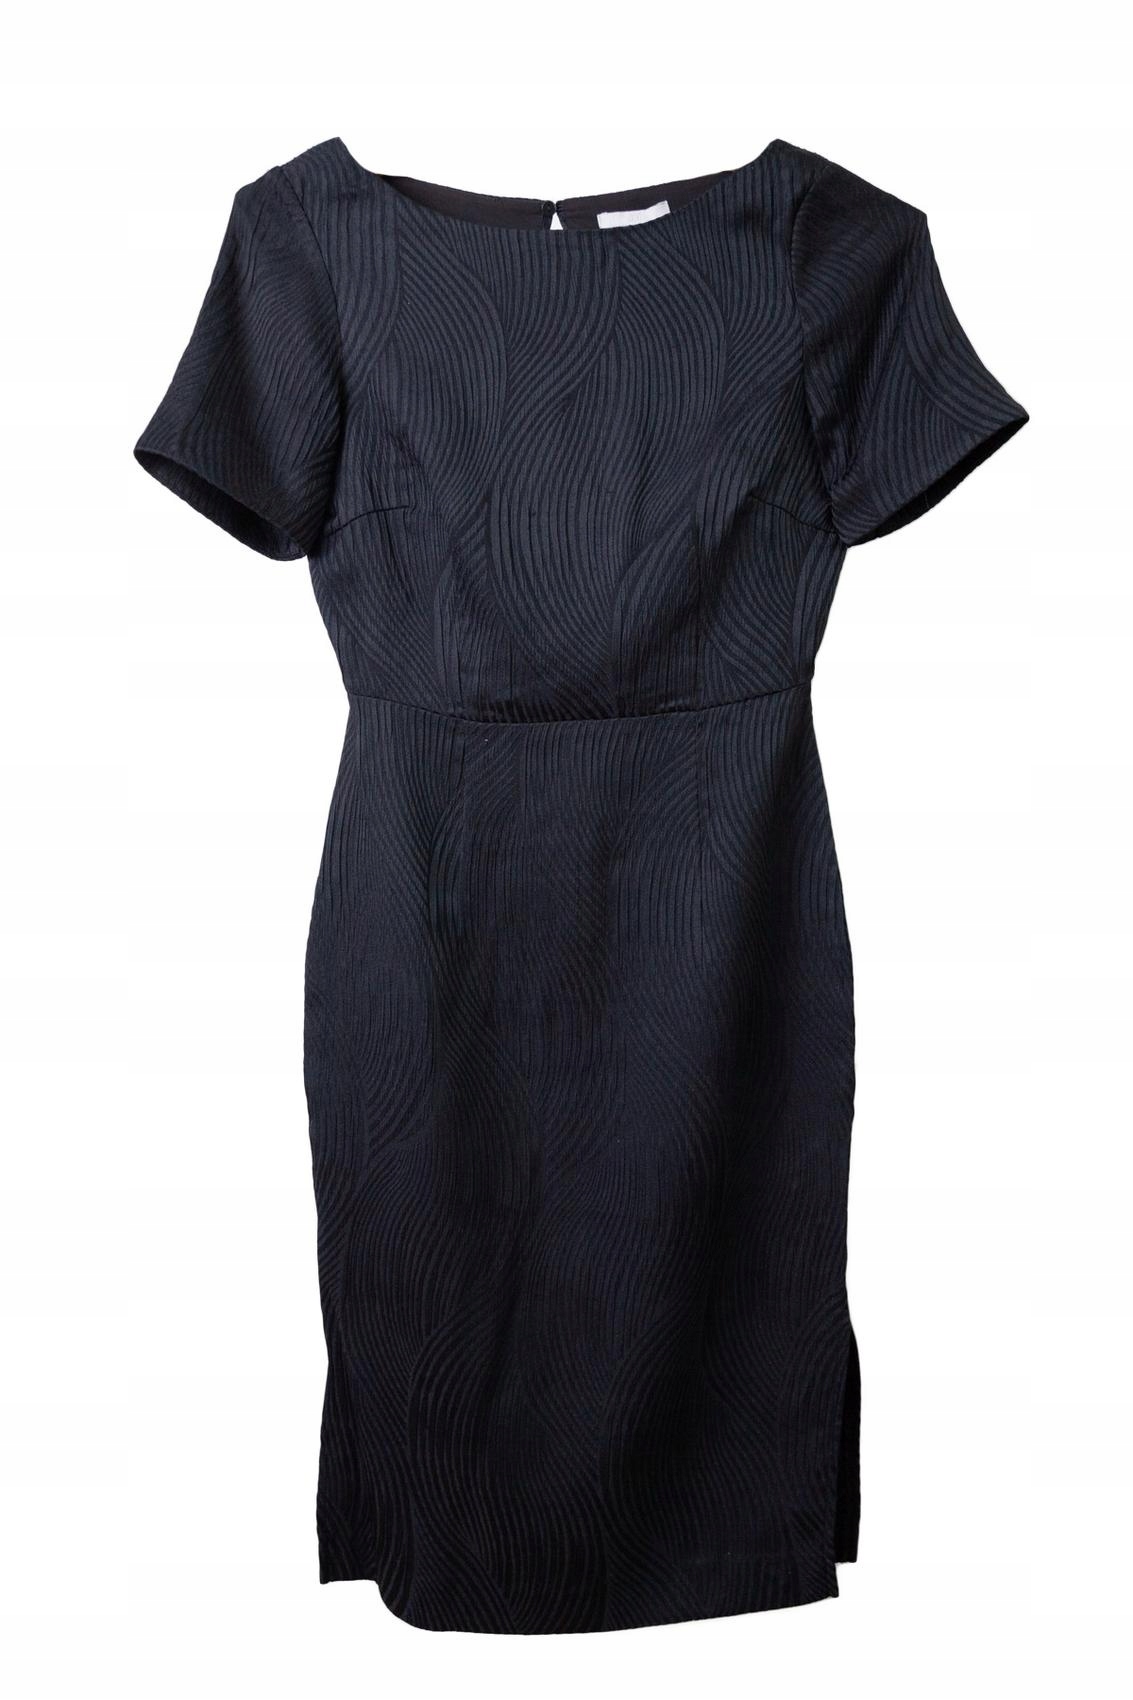 H&M šaty odhalený chrbát XS/34 malá čierna